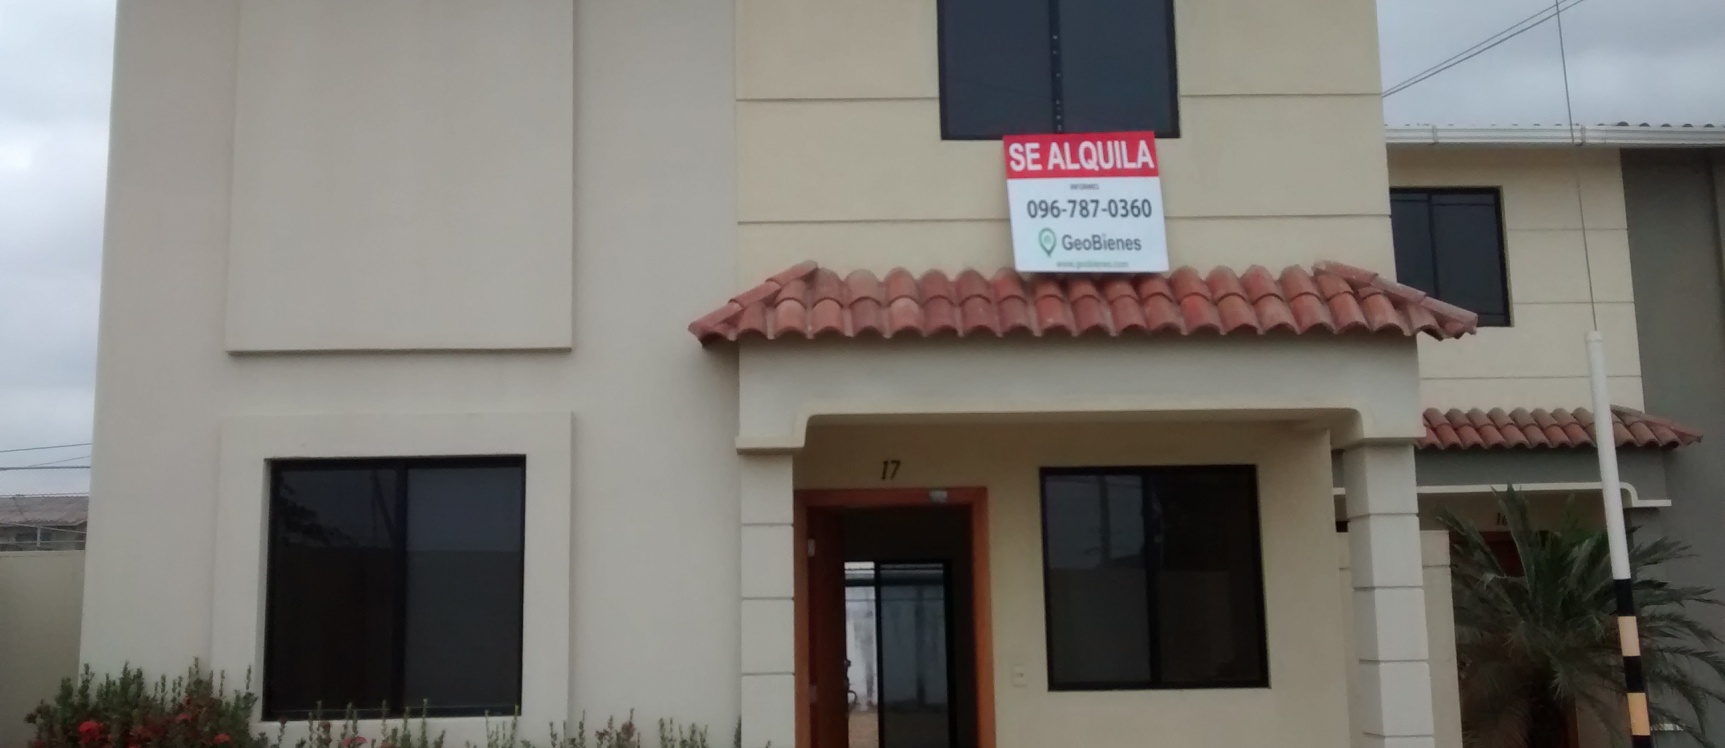 GeoBienes - Casa esquinera en alquiler Urb. Milan - Plusvalia Guayaquil Casas de venta y alquiler Inmobiliaria Ecuador